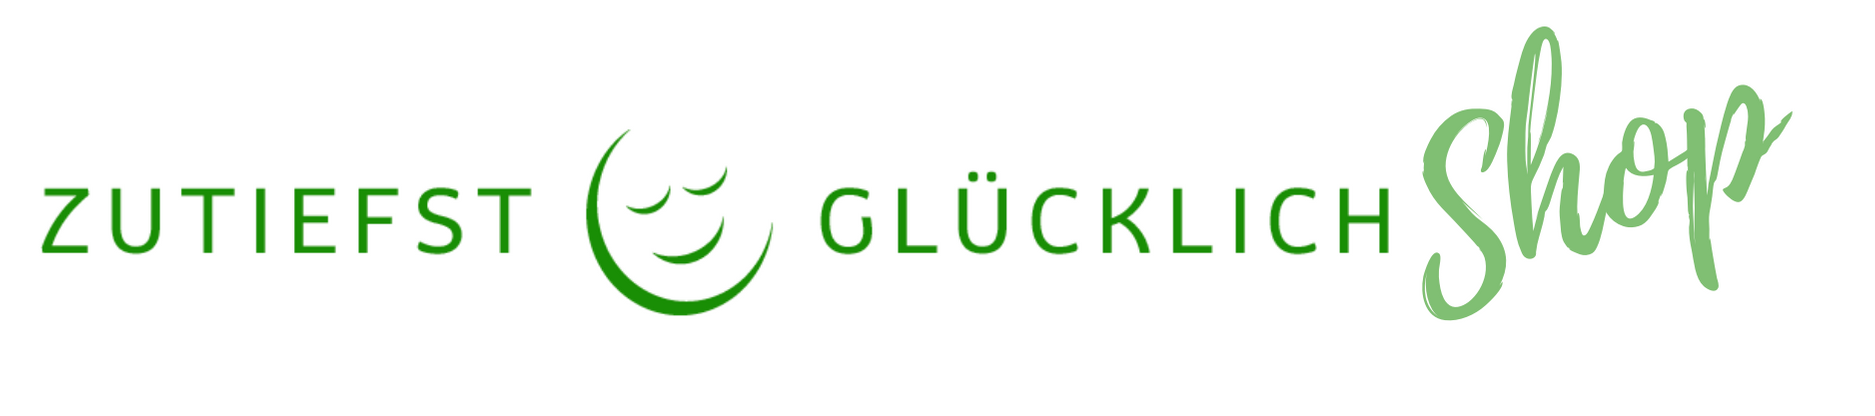 ZUTIEFST GLÜCKLICH-Logo